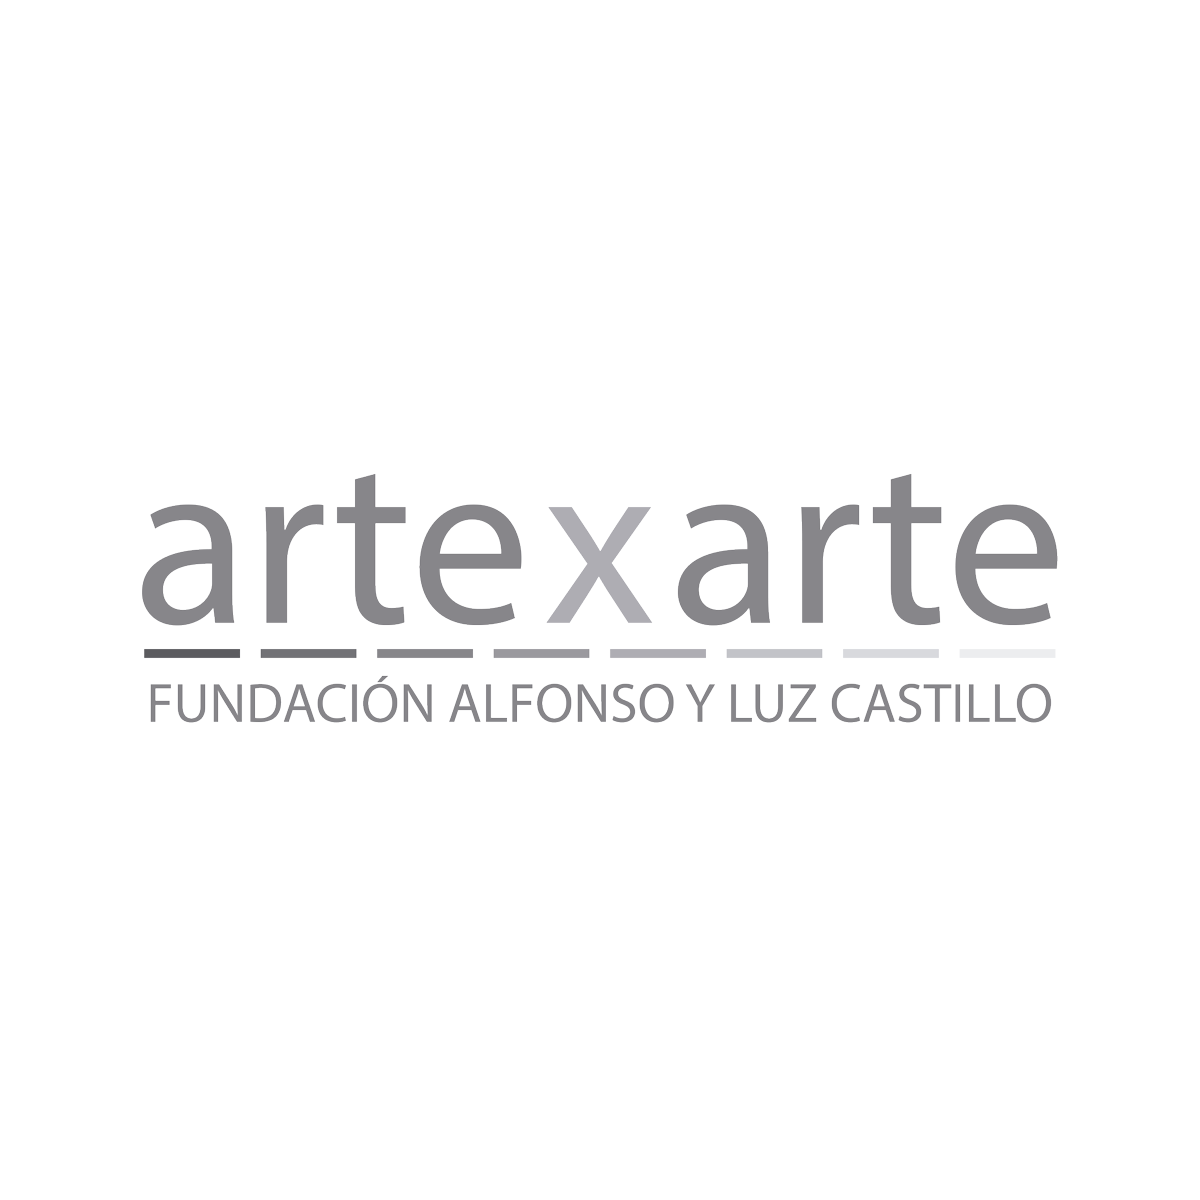 ARTEXARTE. Fundación Alfonso y Luz Castillo